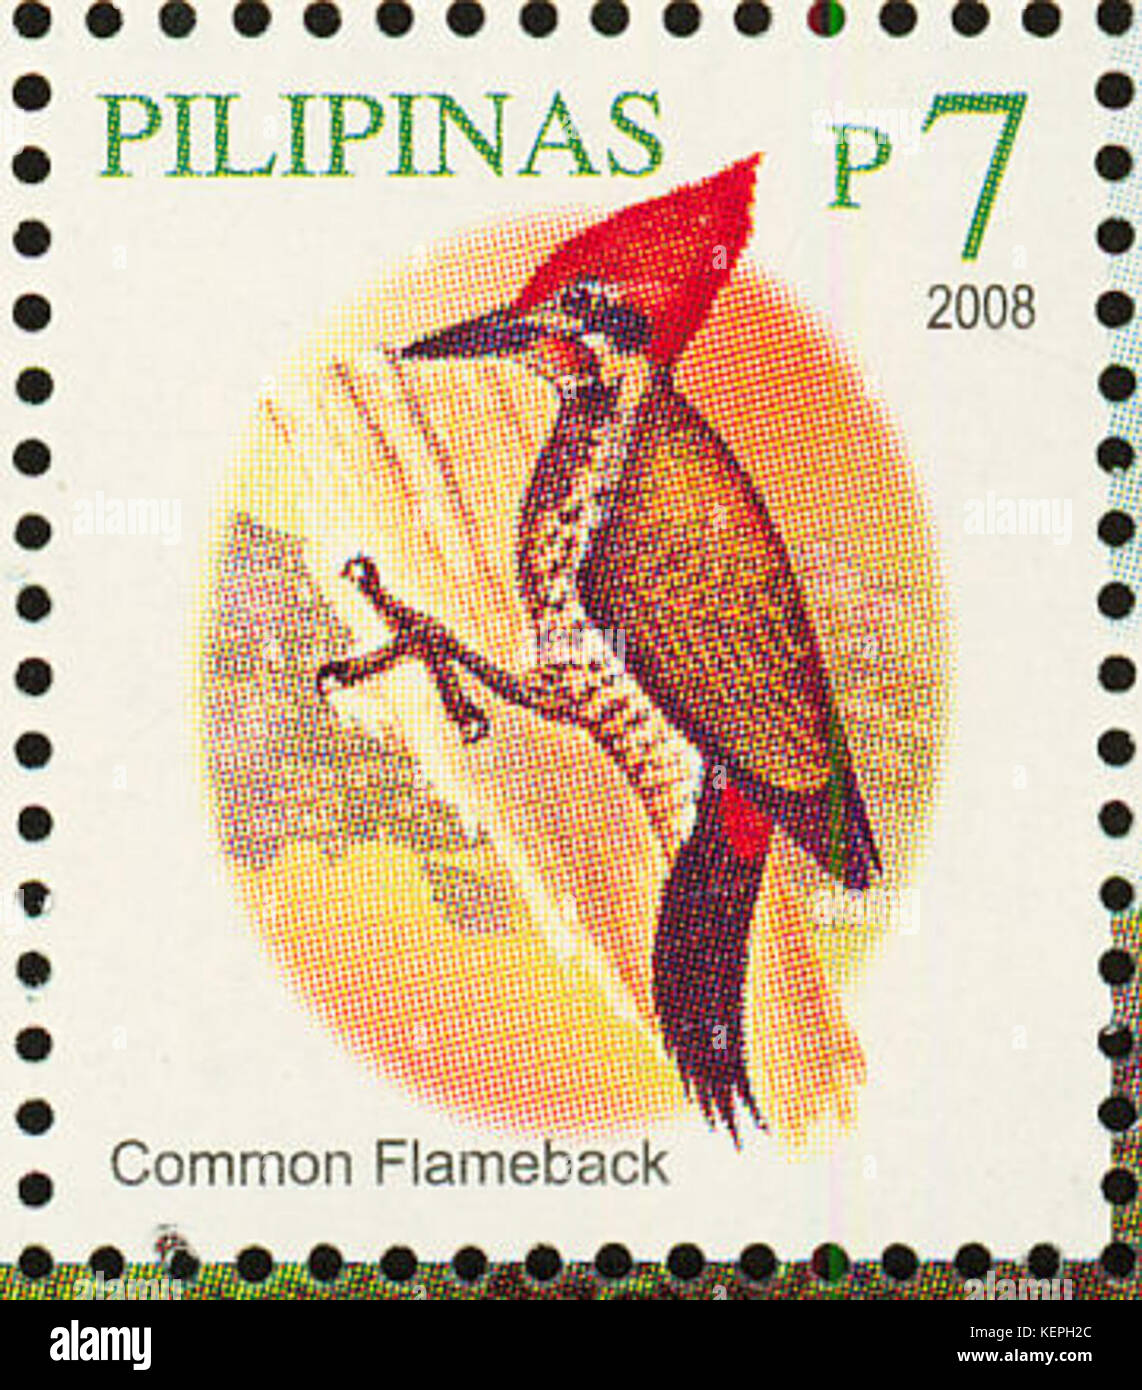 Dinopium javanense 2008 stamp of the Philippines Stock Photo